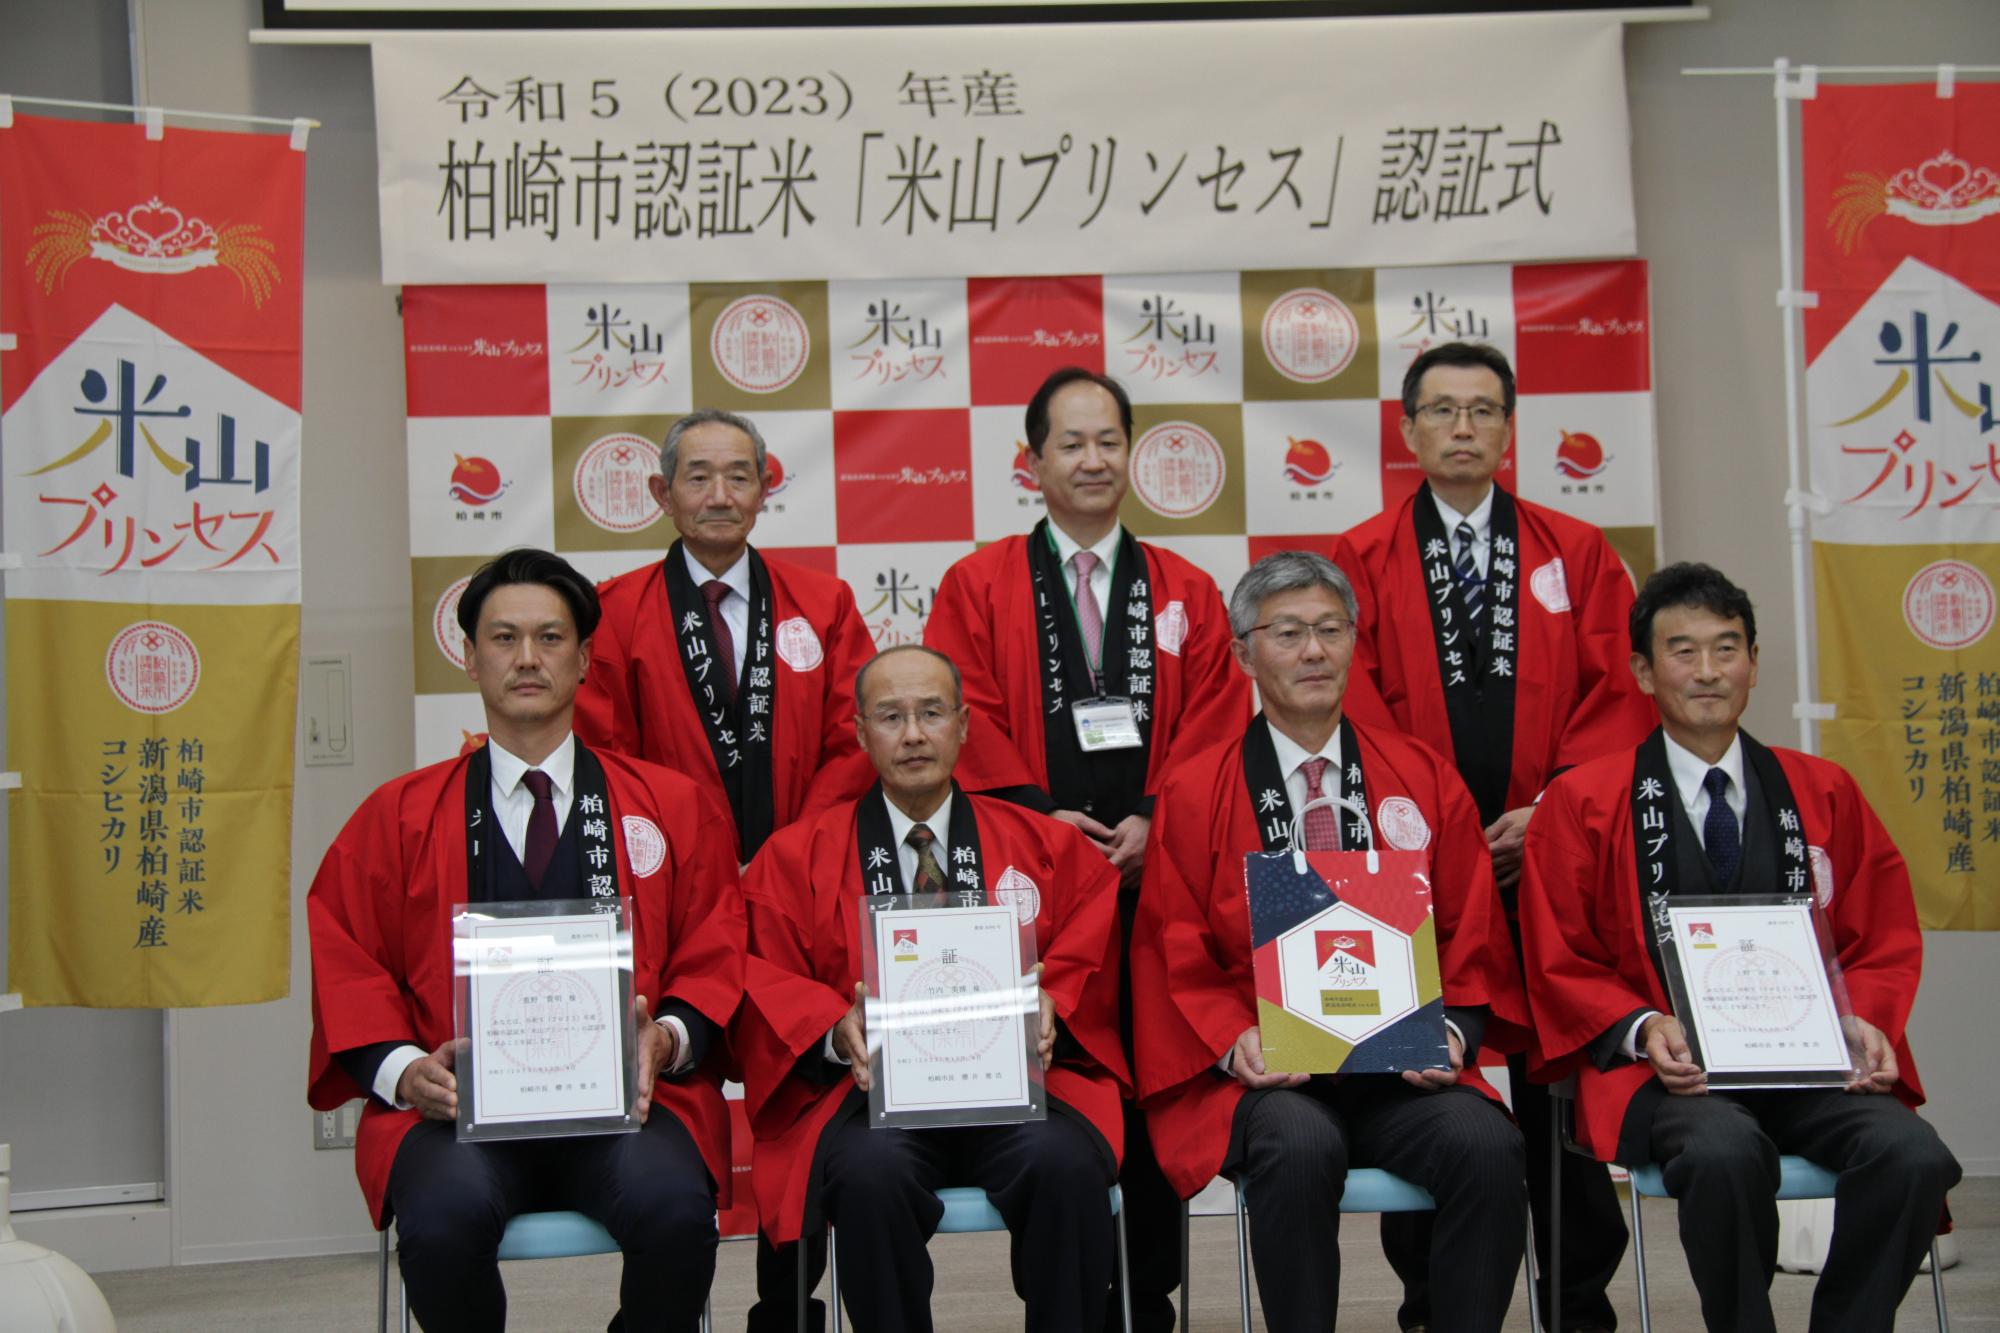 写真：3人の認証者と、櫻井市長をはじめとした関係者が記念のカメラに収まりました。全員が米山プリンセスの赤い法被を着用しました。